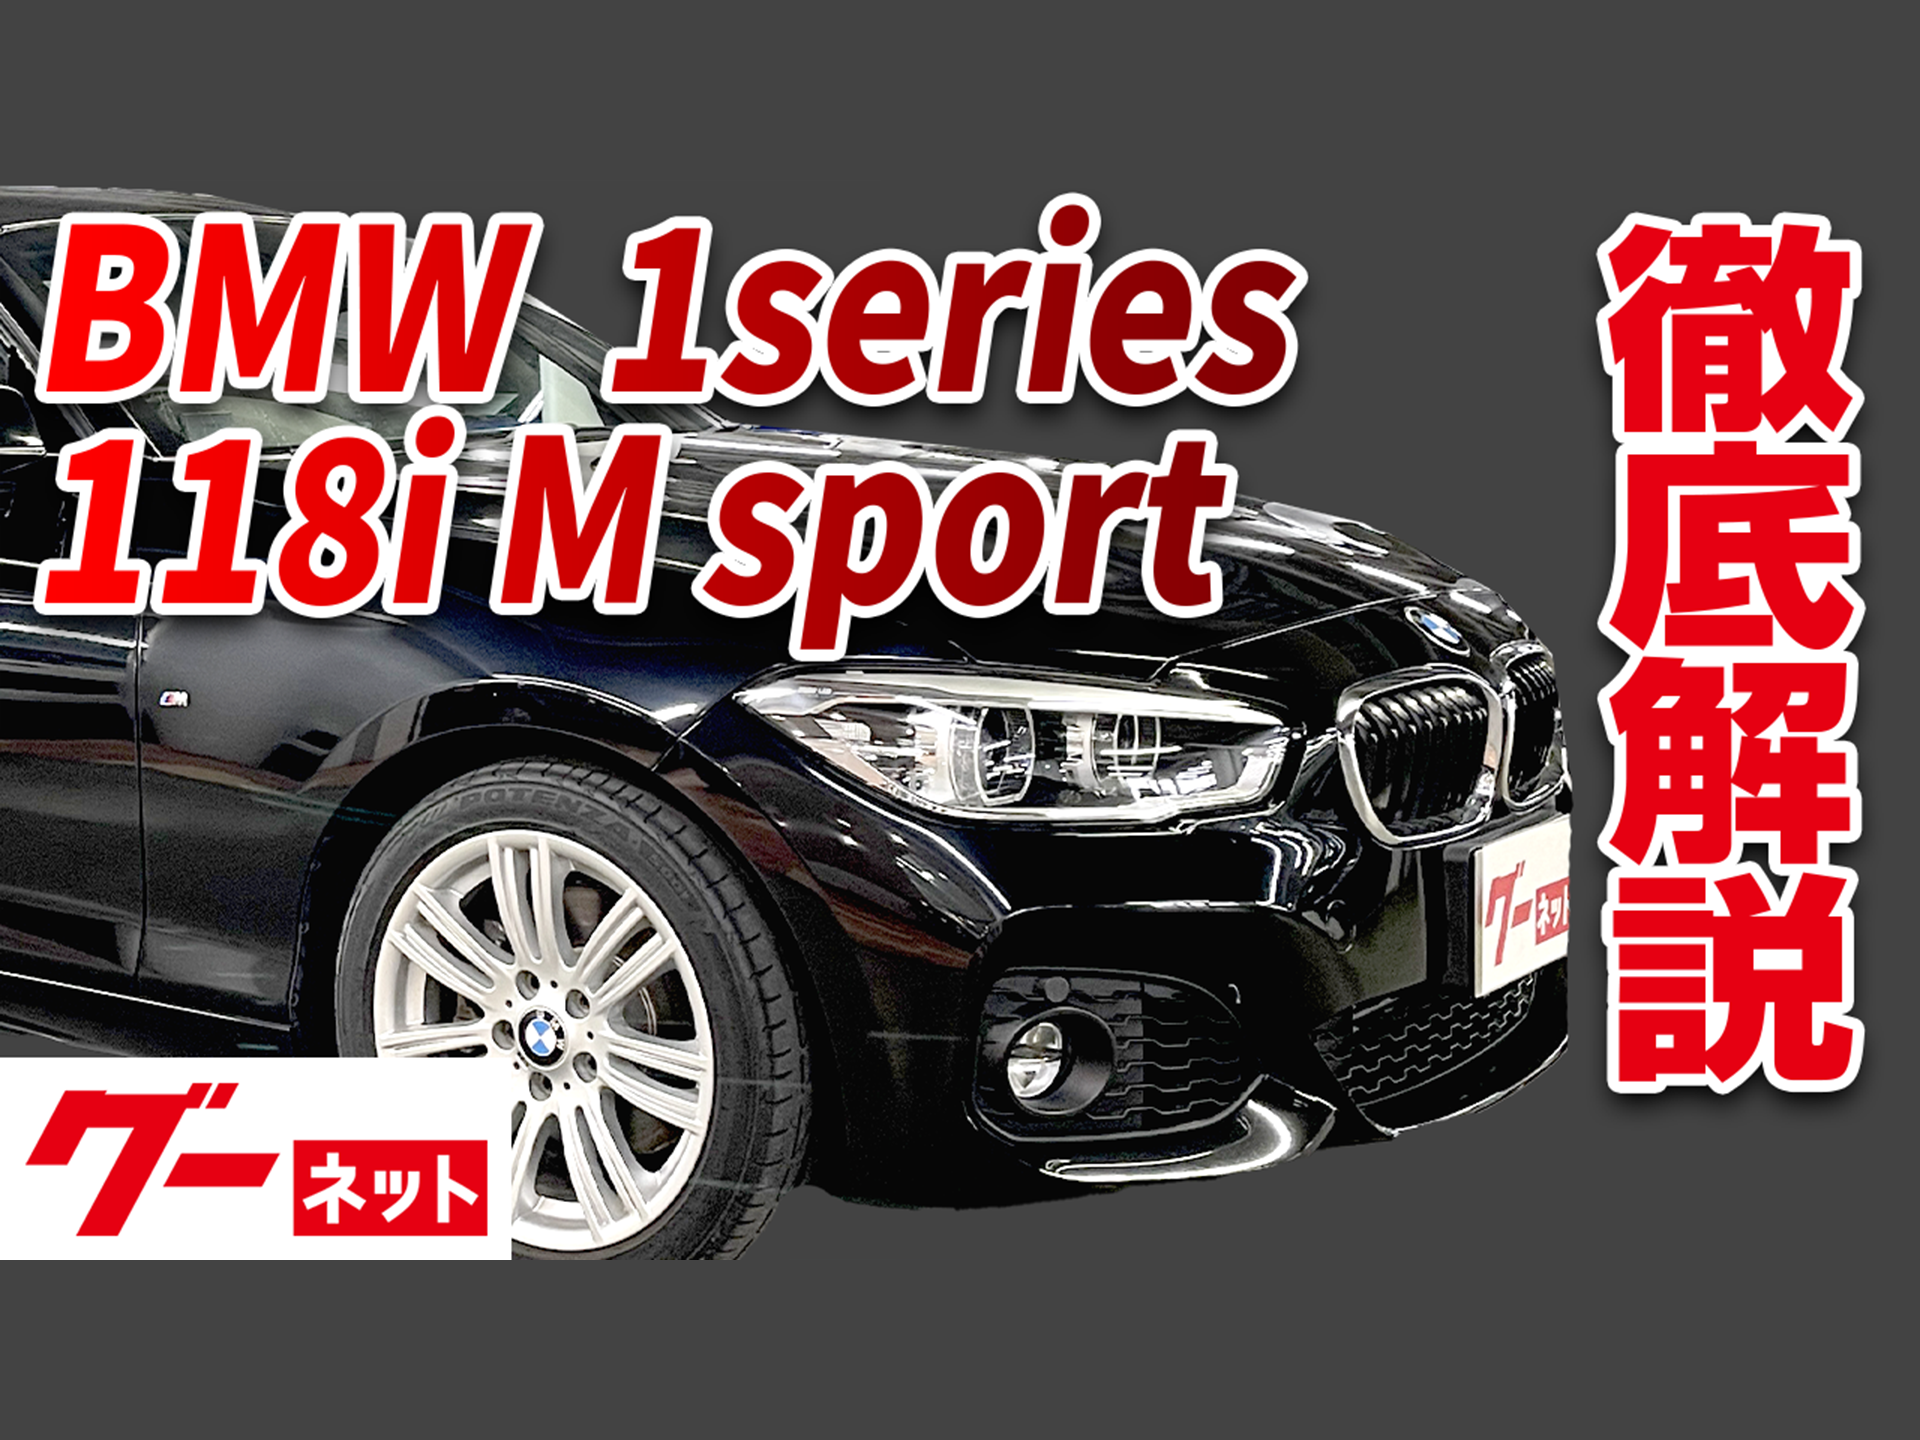 【BMW 1シリーズハッチバック】F20 118i Mスポーツ グーネット動画カタログ